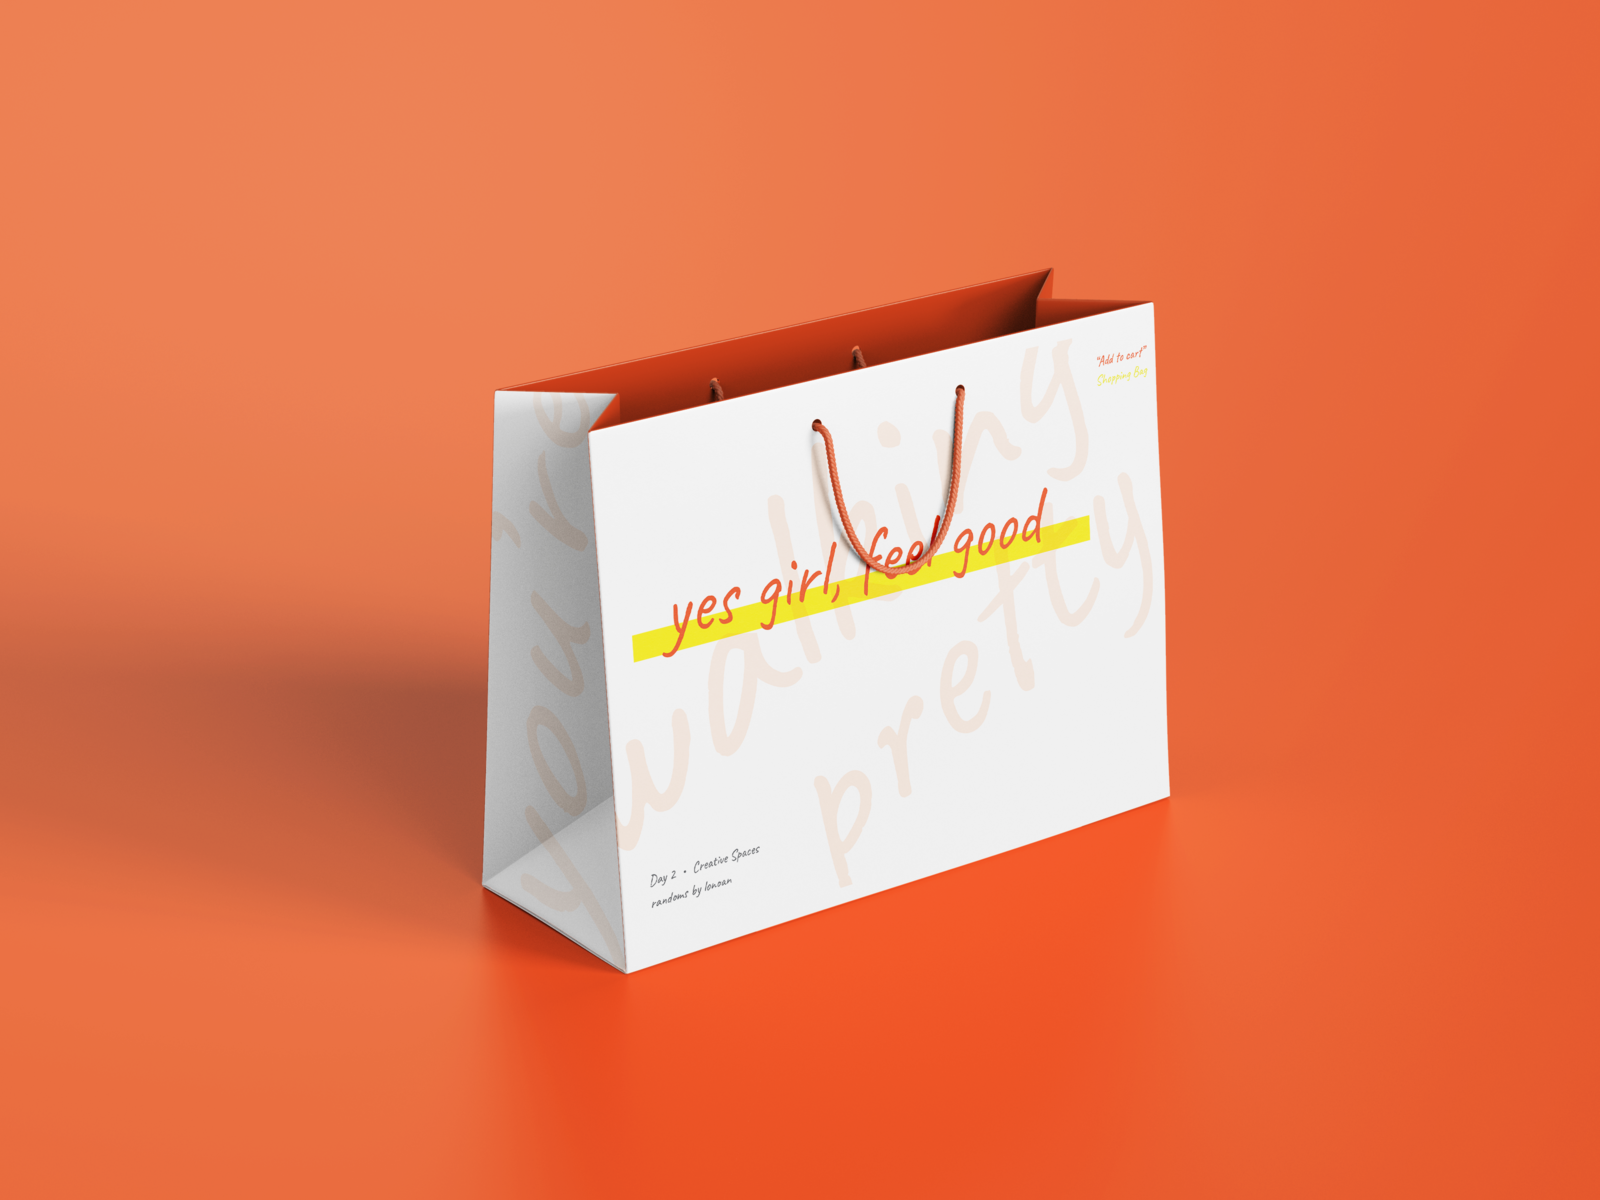 Yes girl, feel good - Shopping Bag by Lenry Neequaye on Dribbble